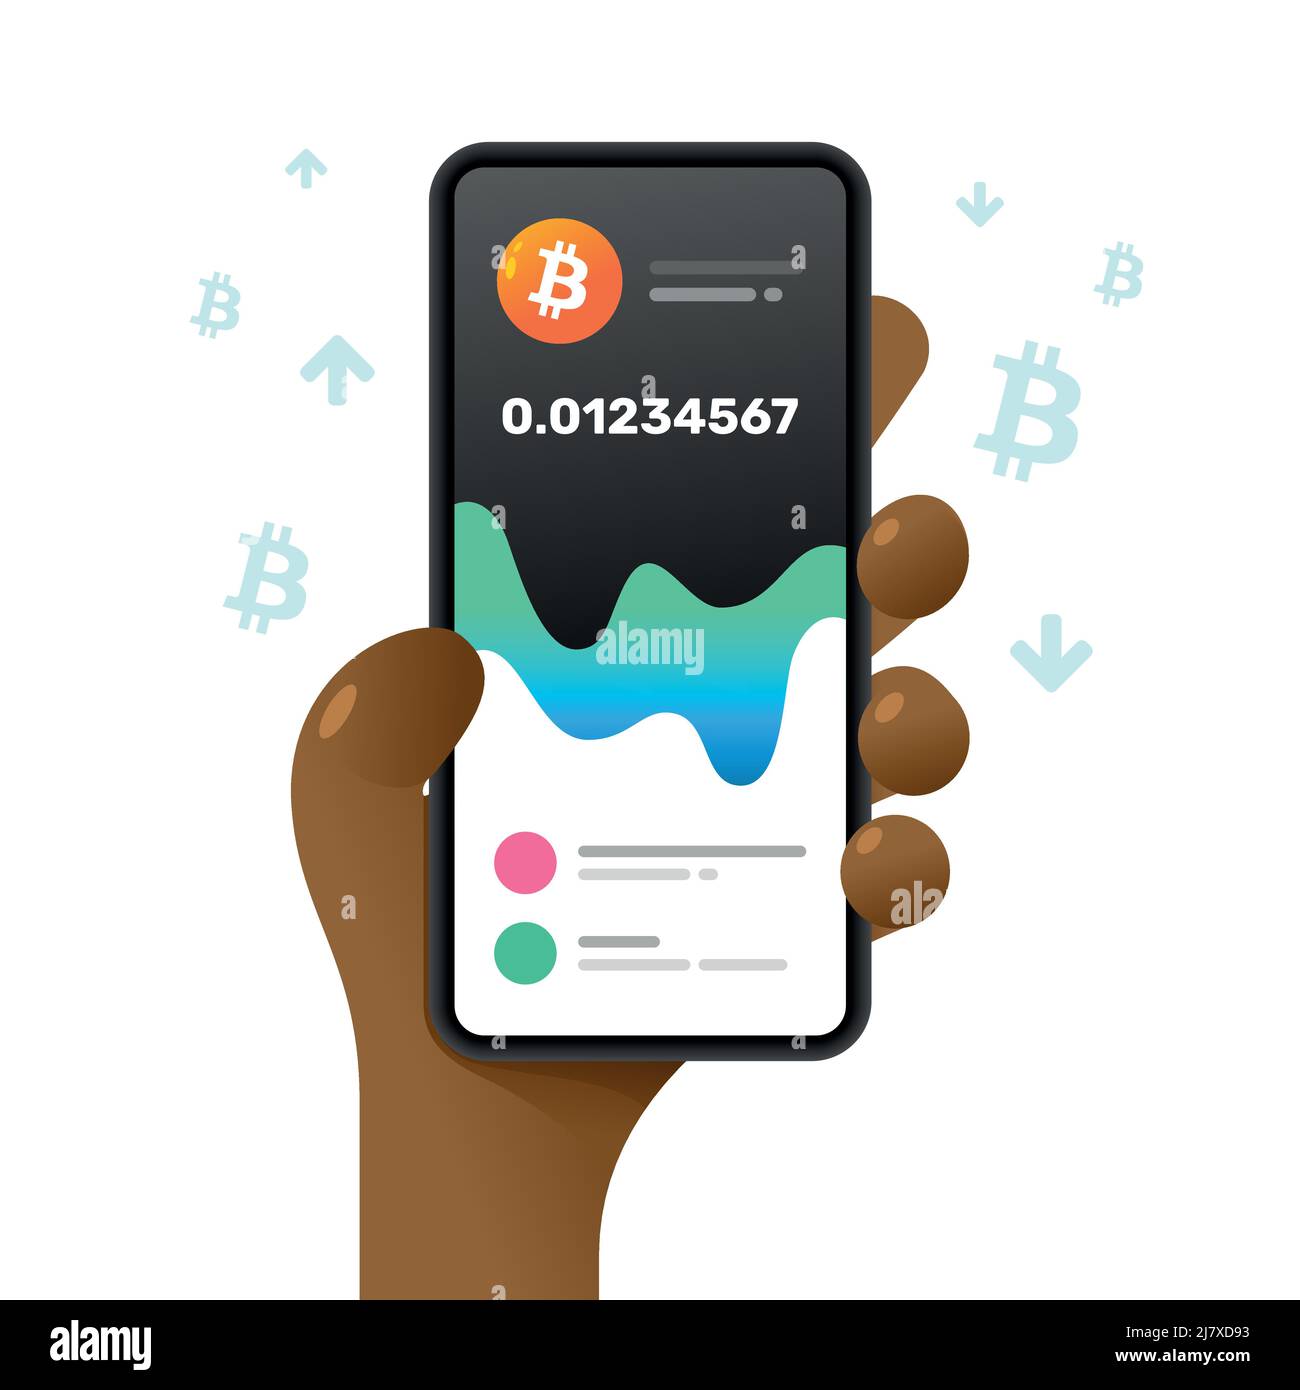 Une maquette de smartphone dans la main. Tableau des valeurs Bitcoin. Tendances du marché. Illustration de crypto-monnaie vectorielle colorée Illustration de Vecteur